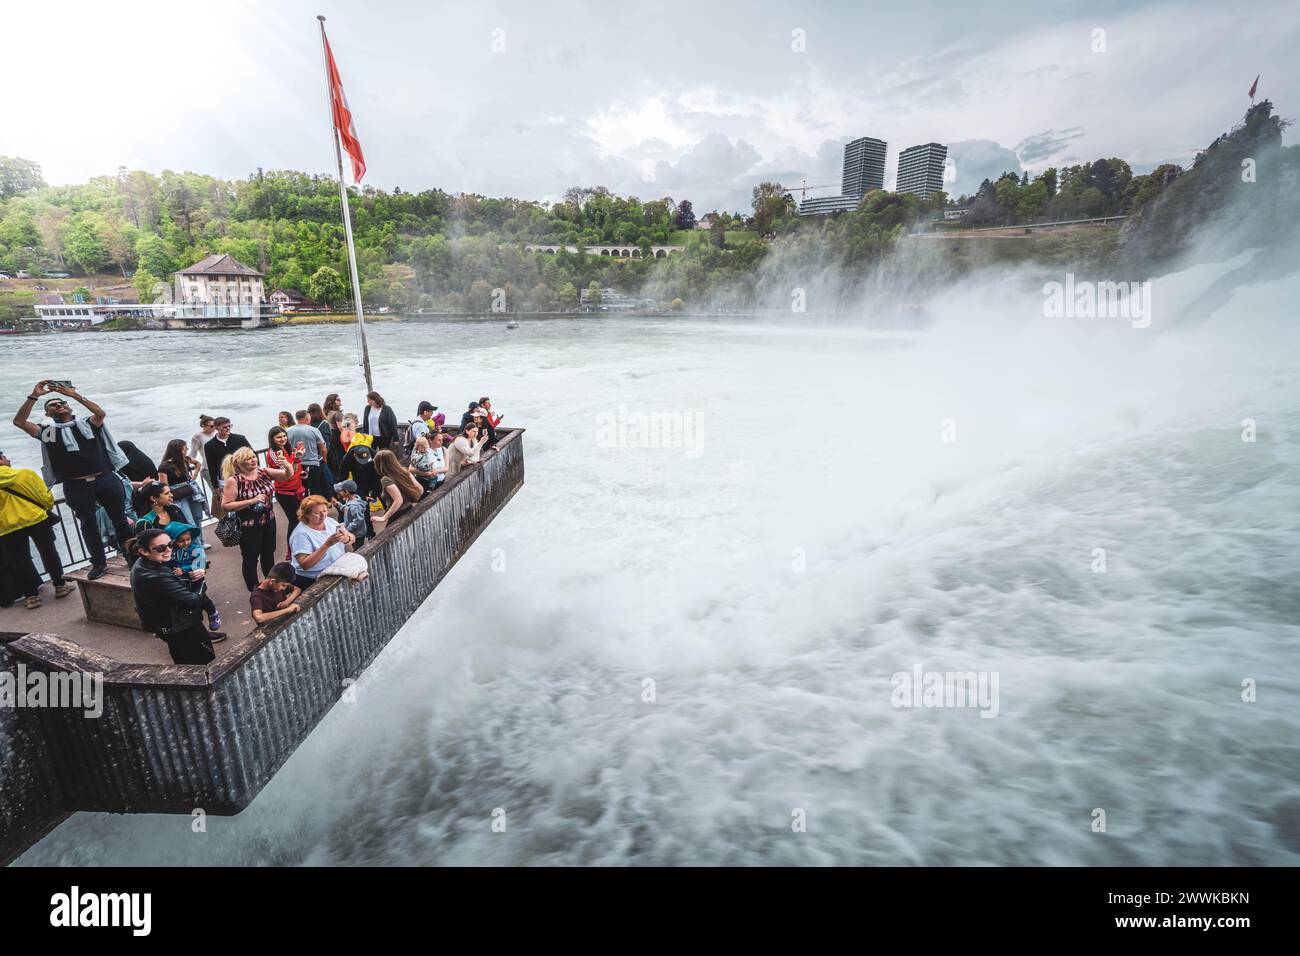 Descrizione: I turisti apprezzano le massicce inondazioni d'acqua delle possenti Cascate del Reno dalla piattaforma di osservazione. Cascate del Reno, Neuhausen am Rheinfall, Schaffh Foto Stock